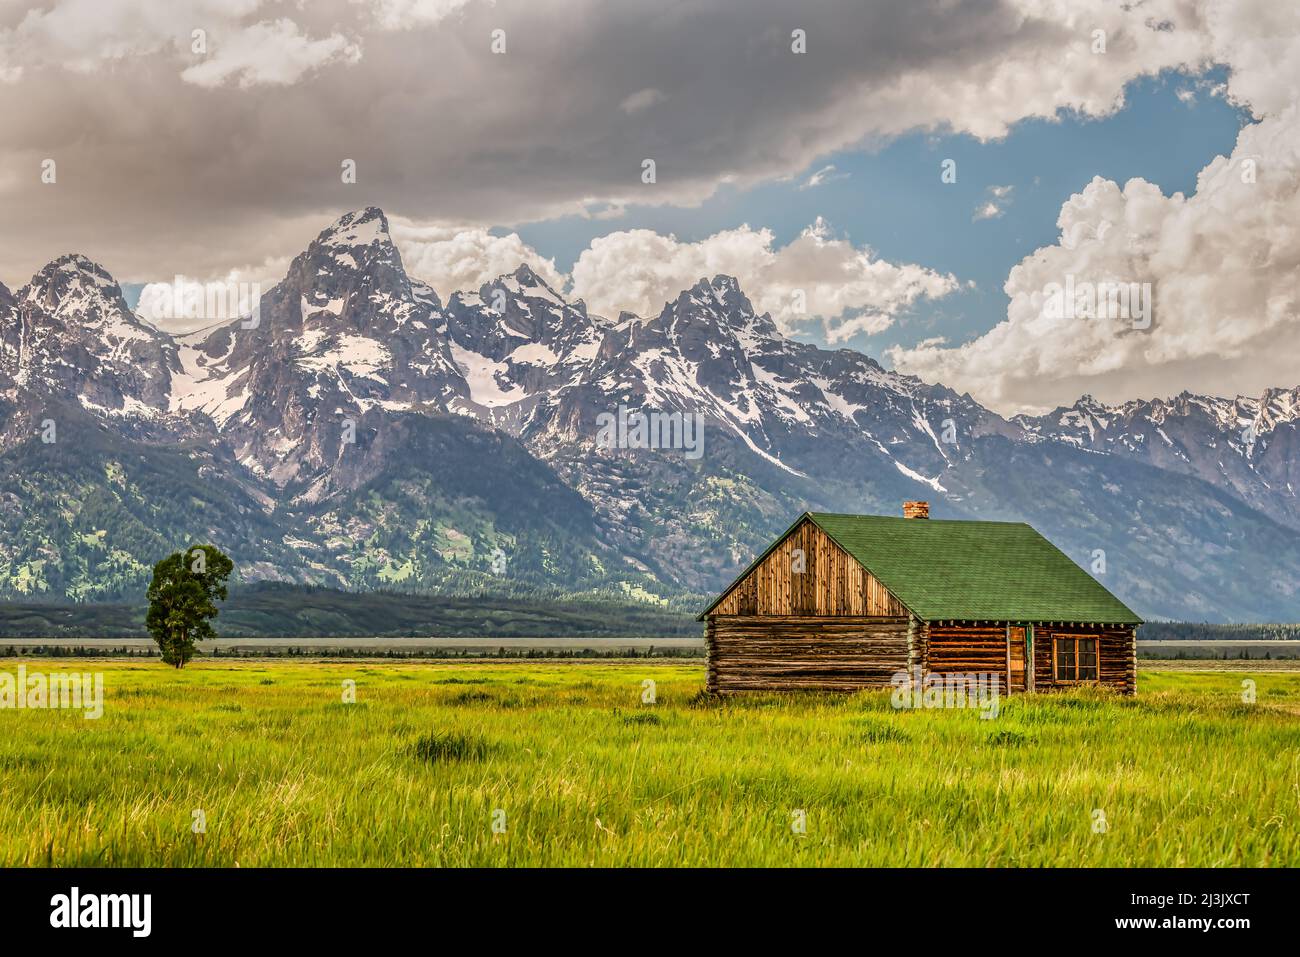 Mormon Ranch historique et les montagnes de Grand Teton dans un matin nuageux, Wyoming, États-Unis Banque D'Images